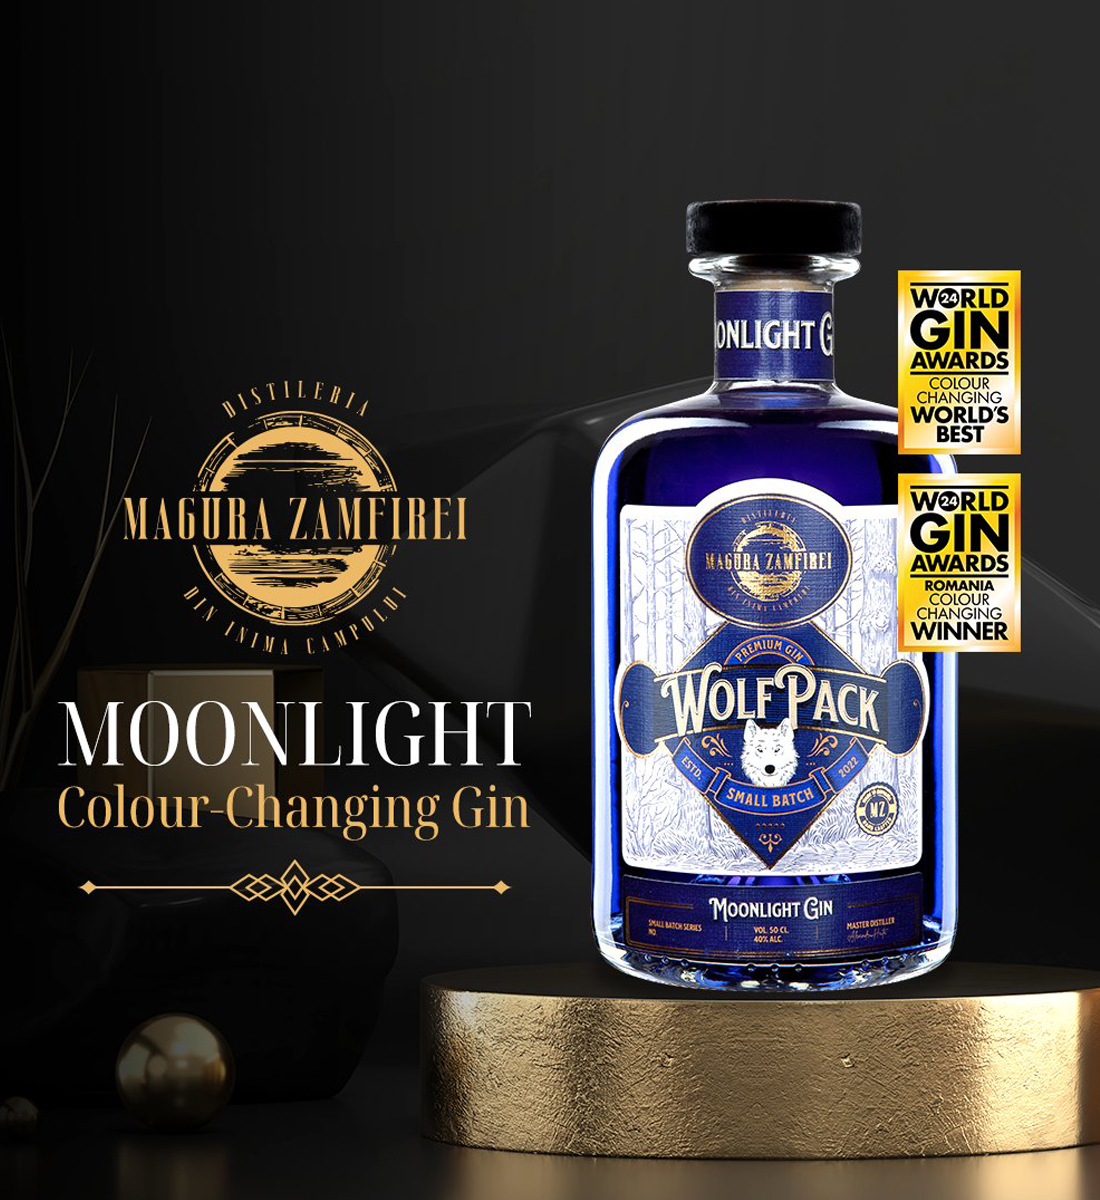 Magura Zamfirei Wolfpack Small Batch Moonlight Gin 0.7L